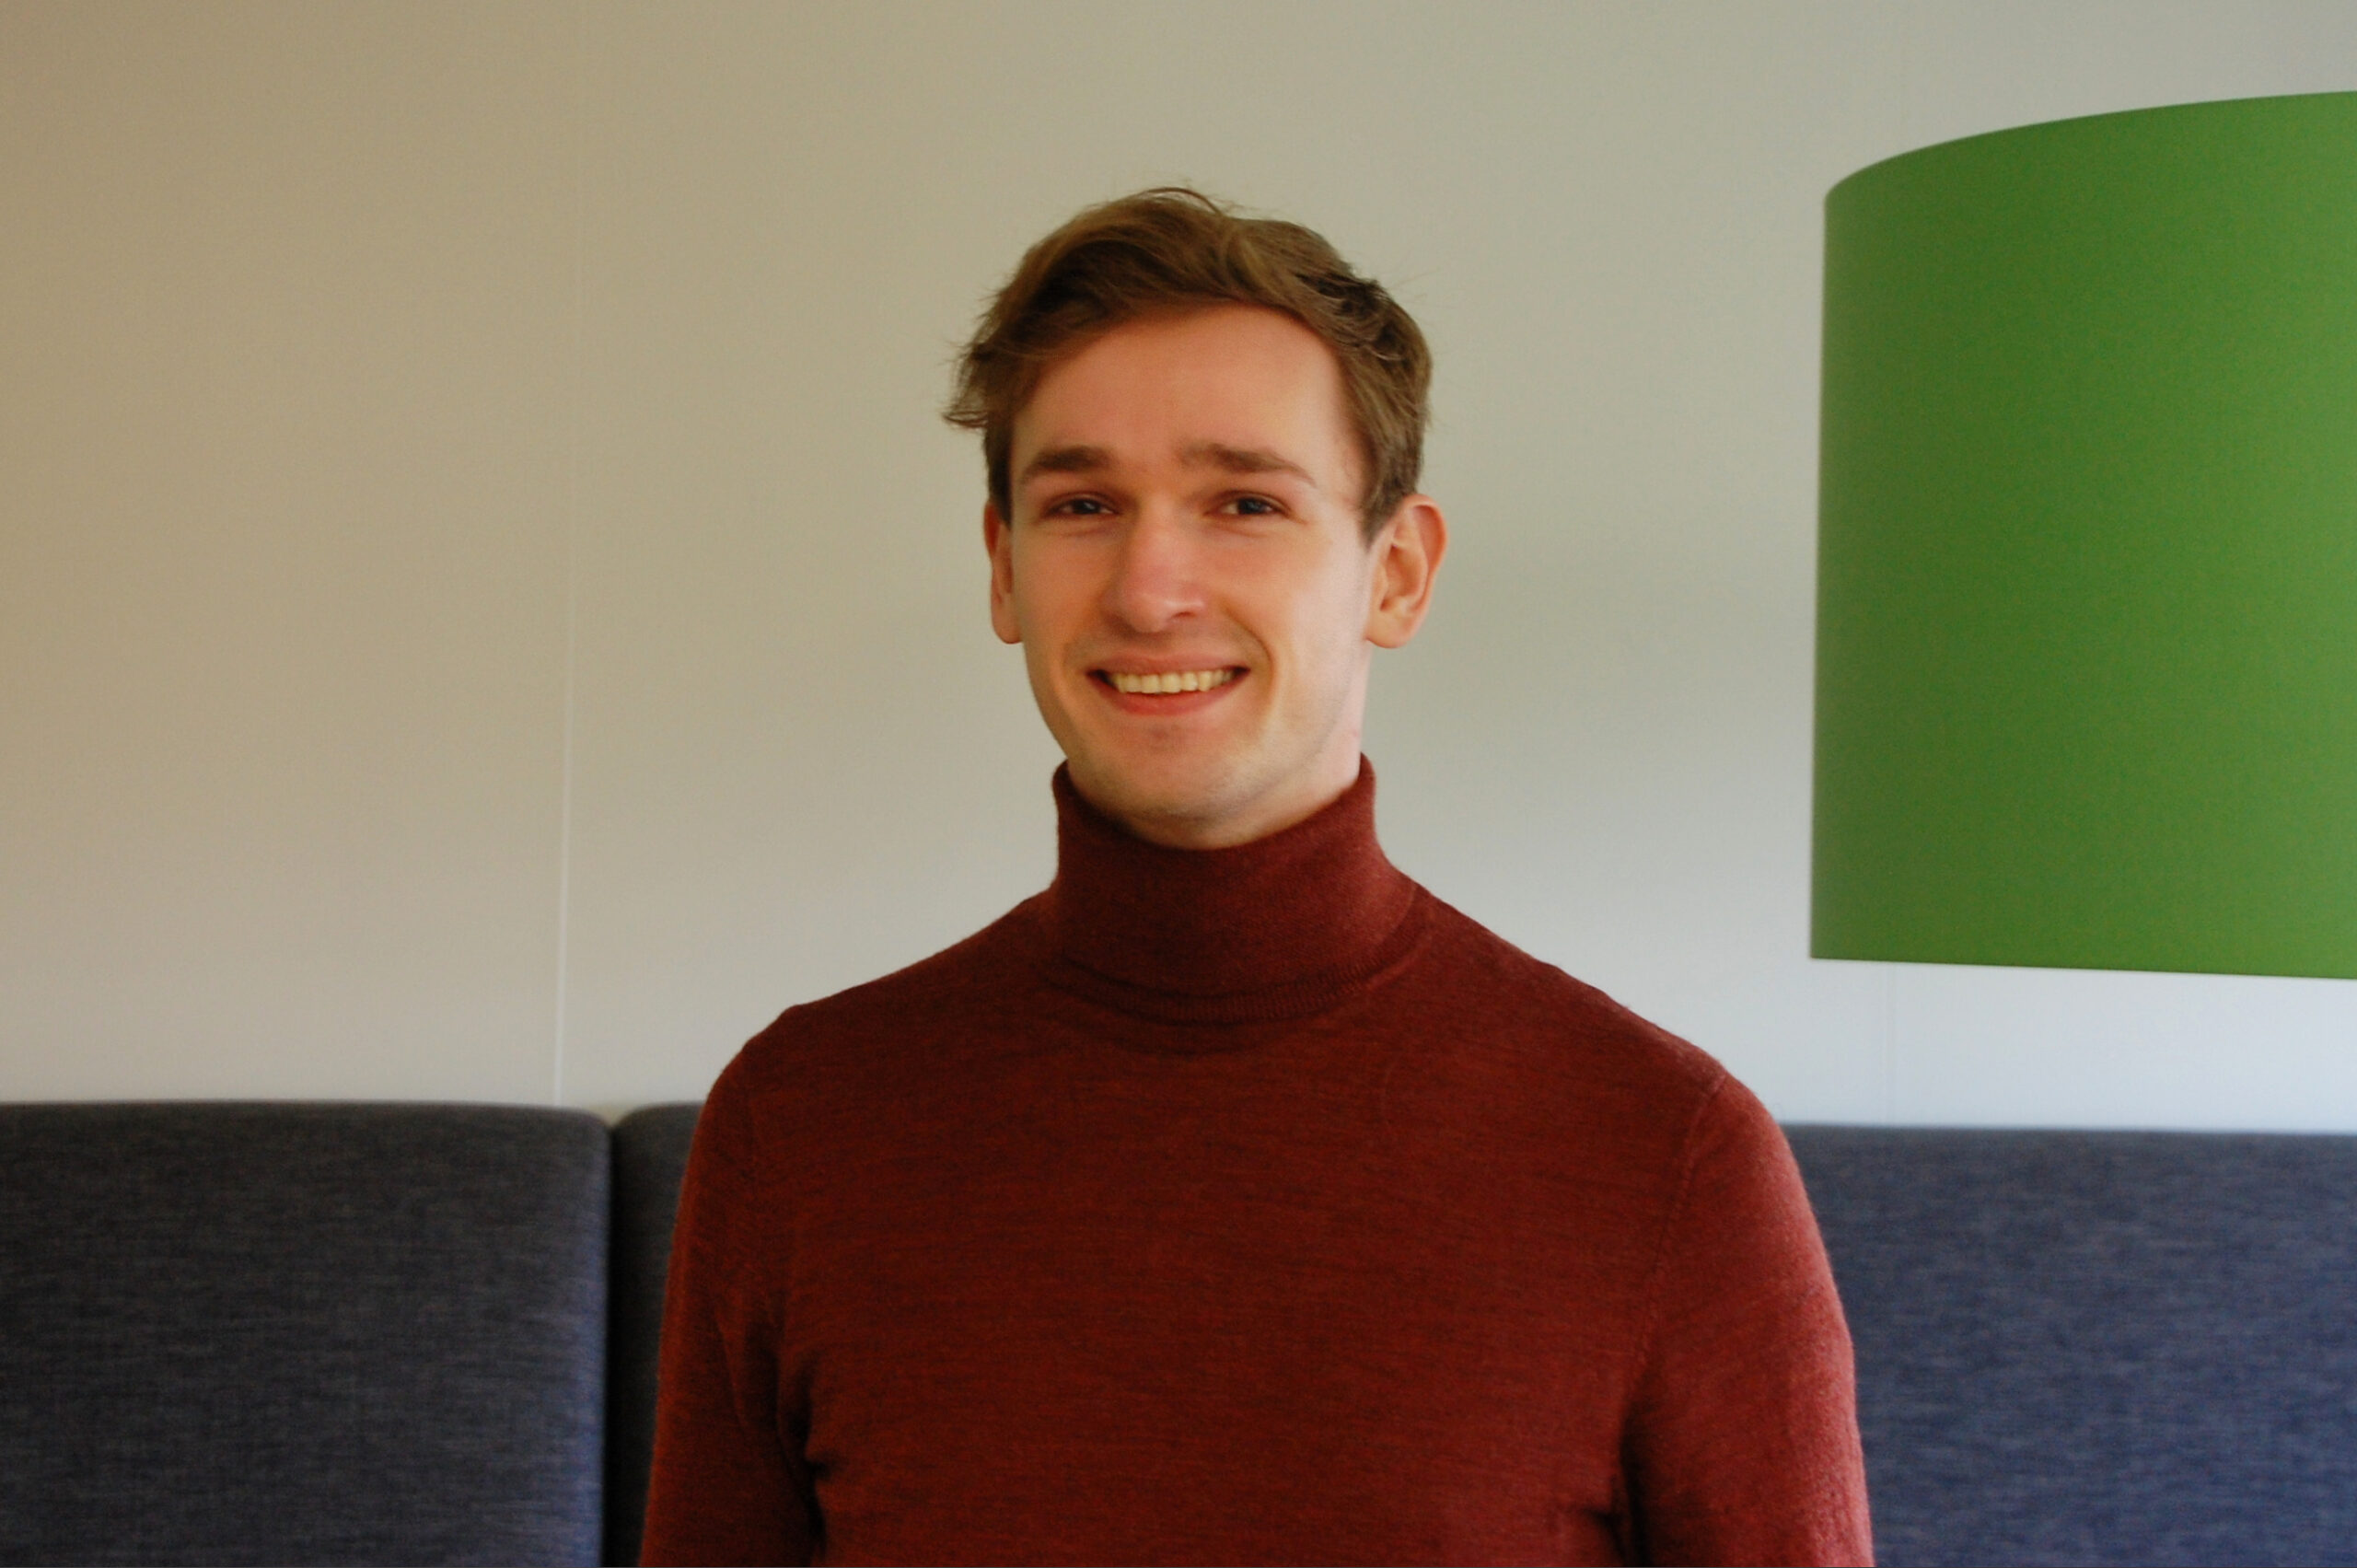 Ian Verhagen, deelnemer aan het Polteq traineeship software tester in januari 2022.